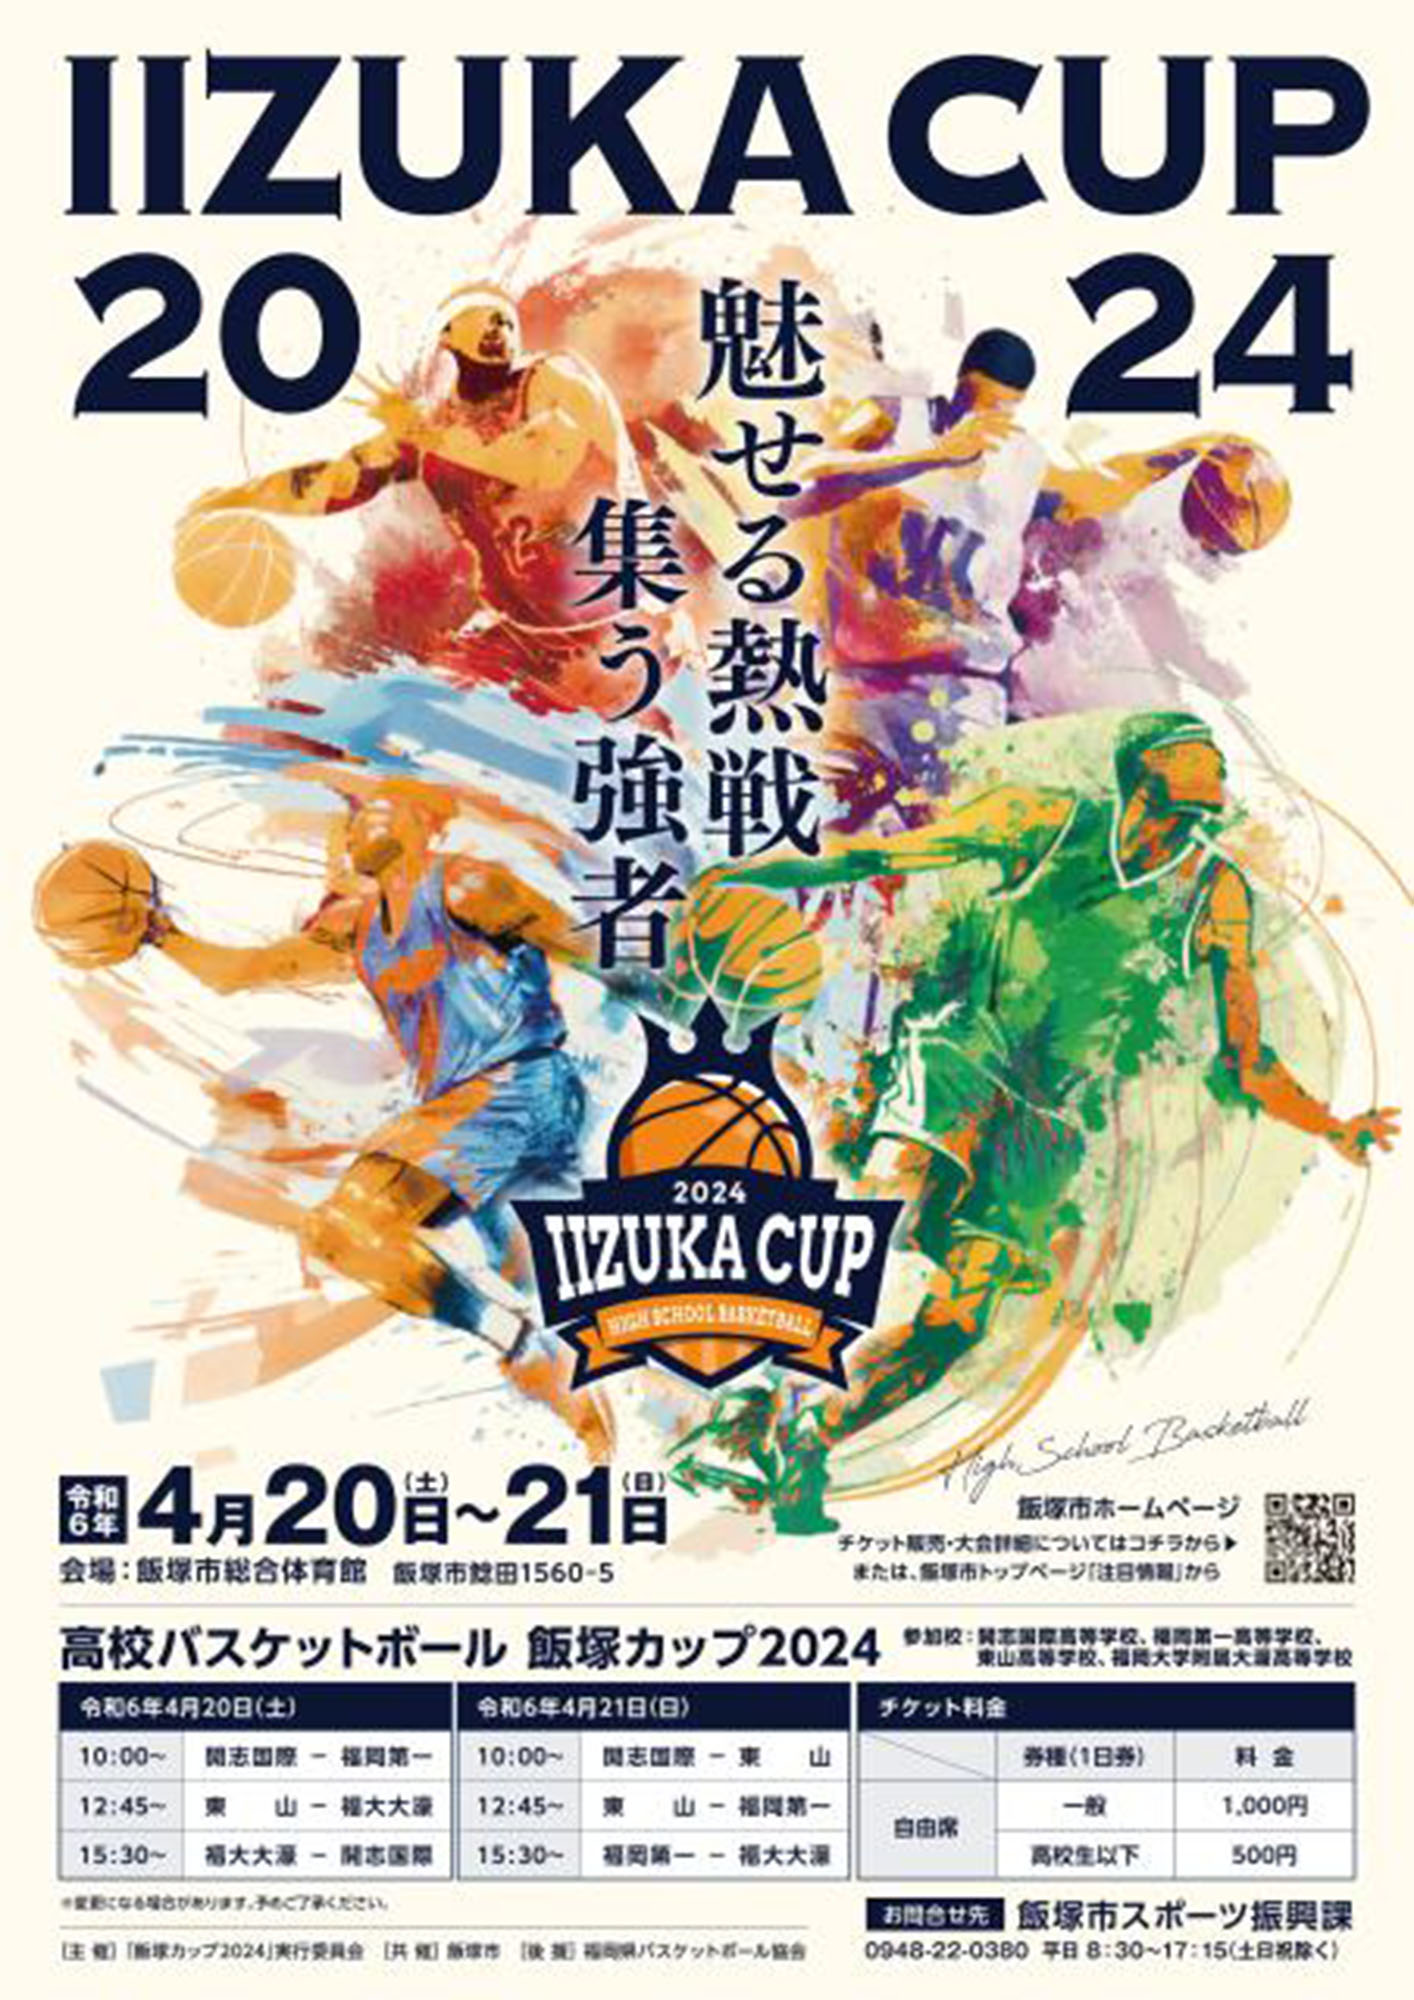 202404_basketball_iizukacup